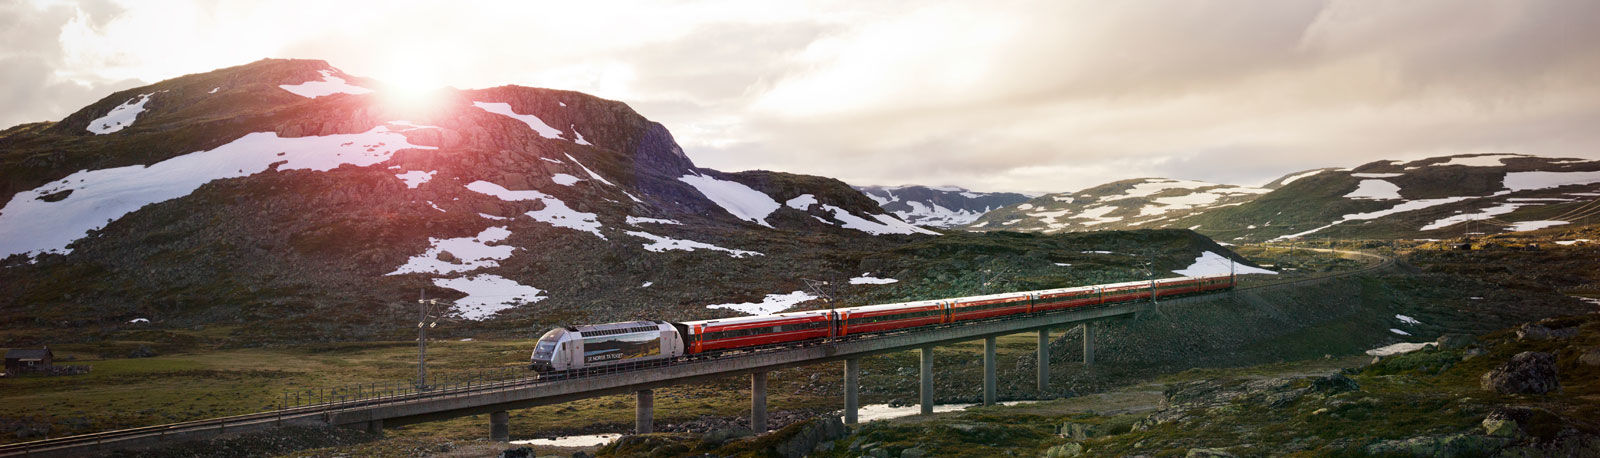 Landschaft in Norwegen mit Bergbahn © Oivind Haug